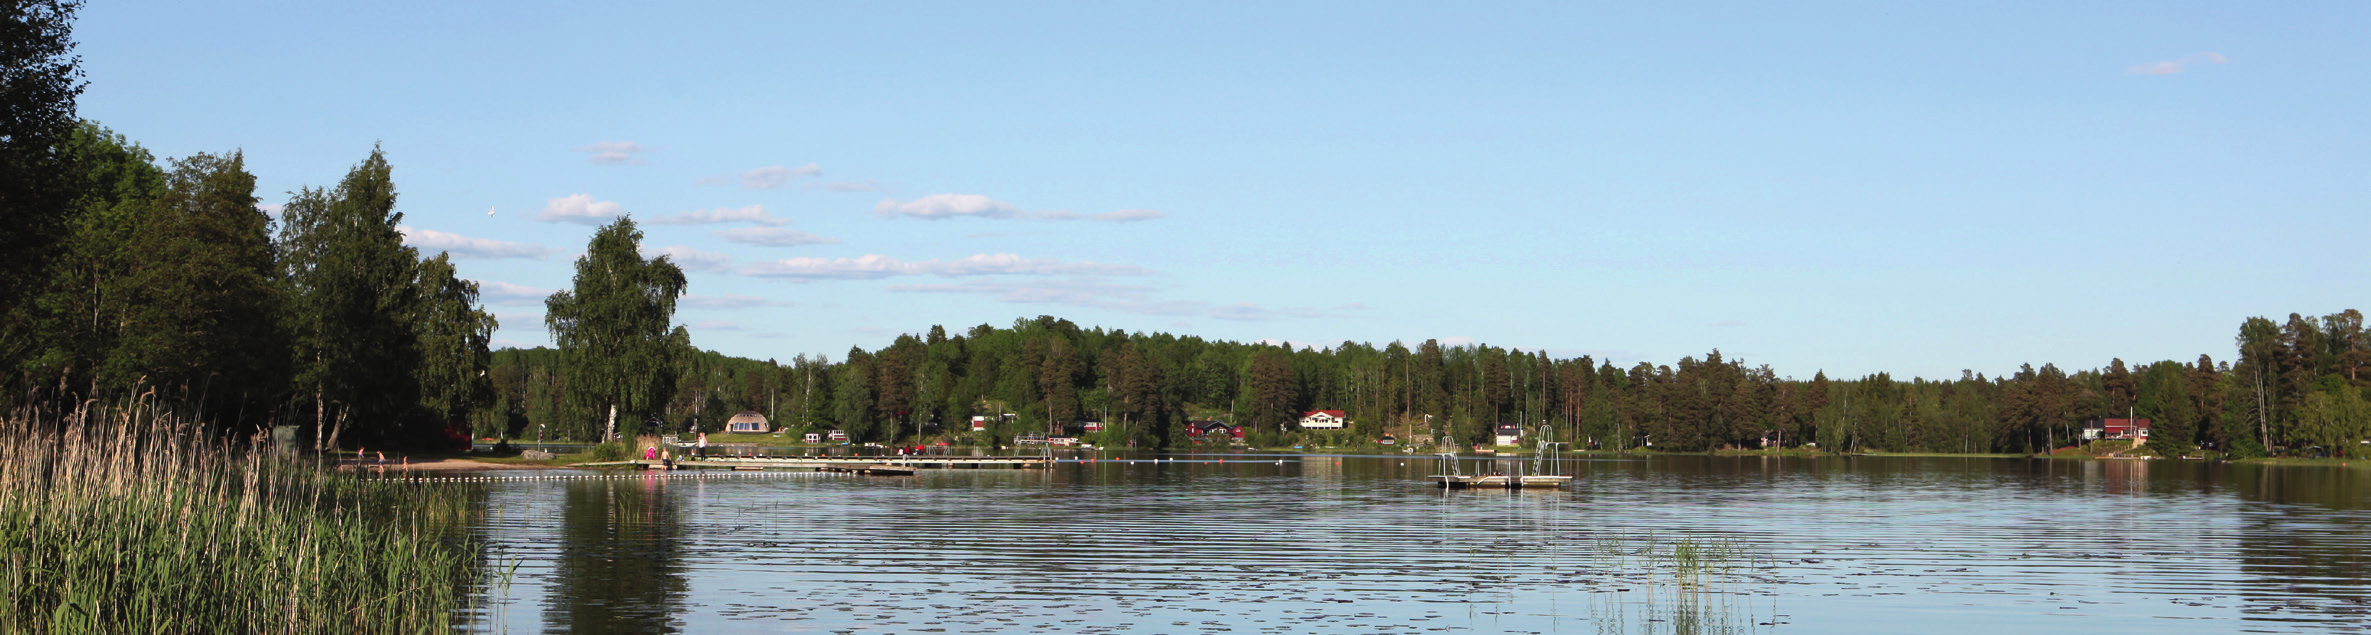 Forssjön. Roddbåt finns att hyra på Djulö camping och där finns även ramp för sjösättning av egen båt.